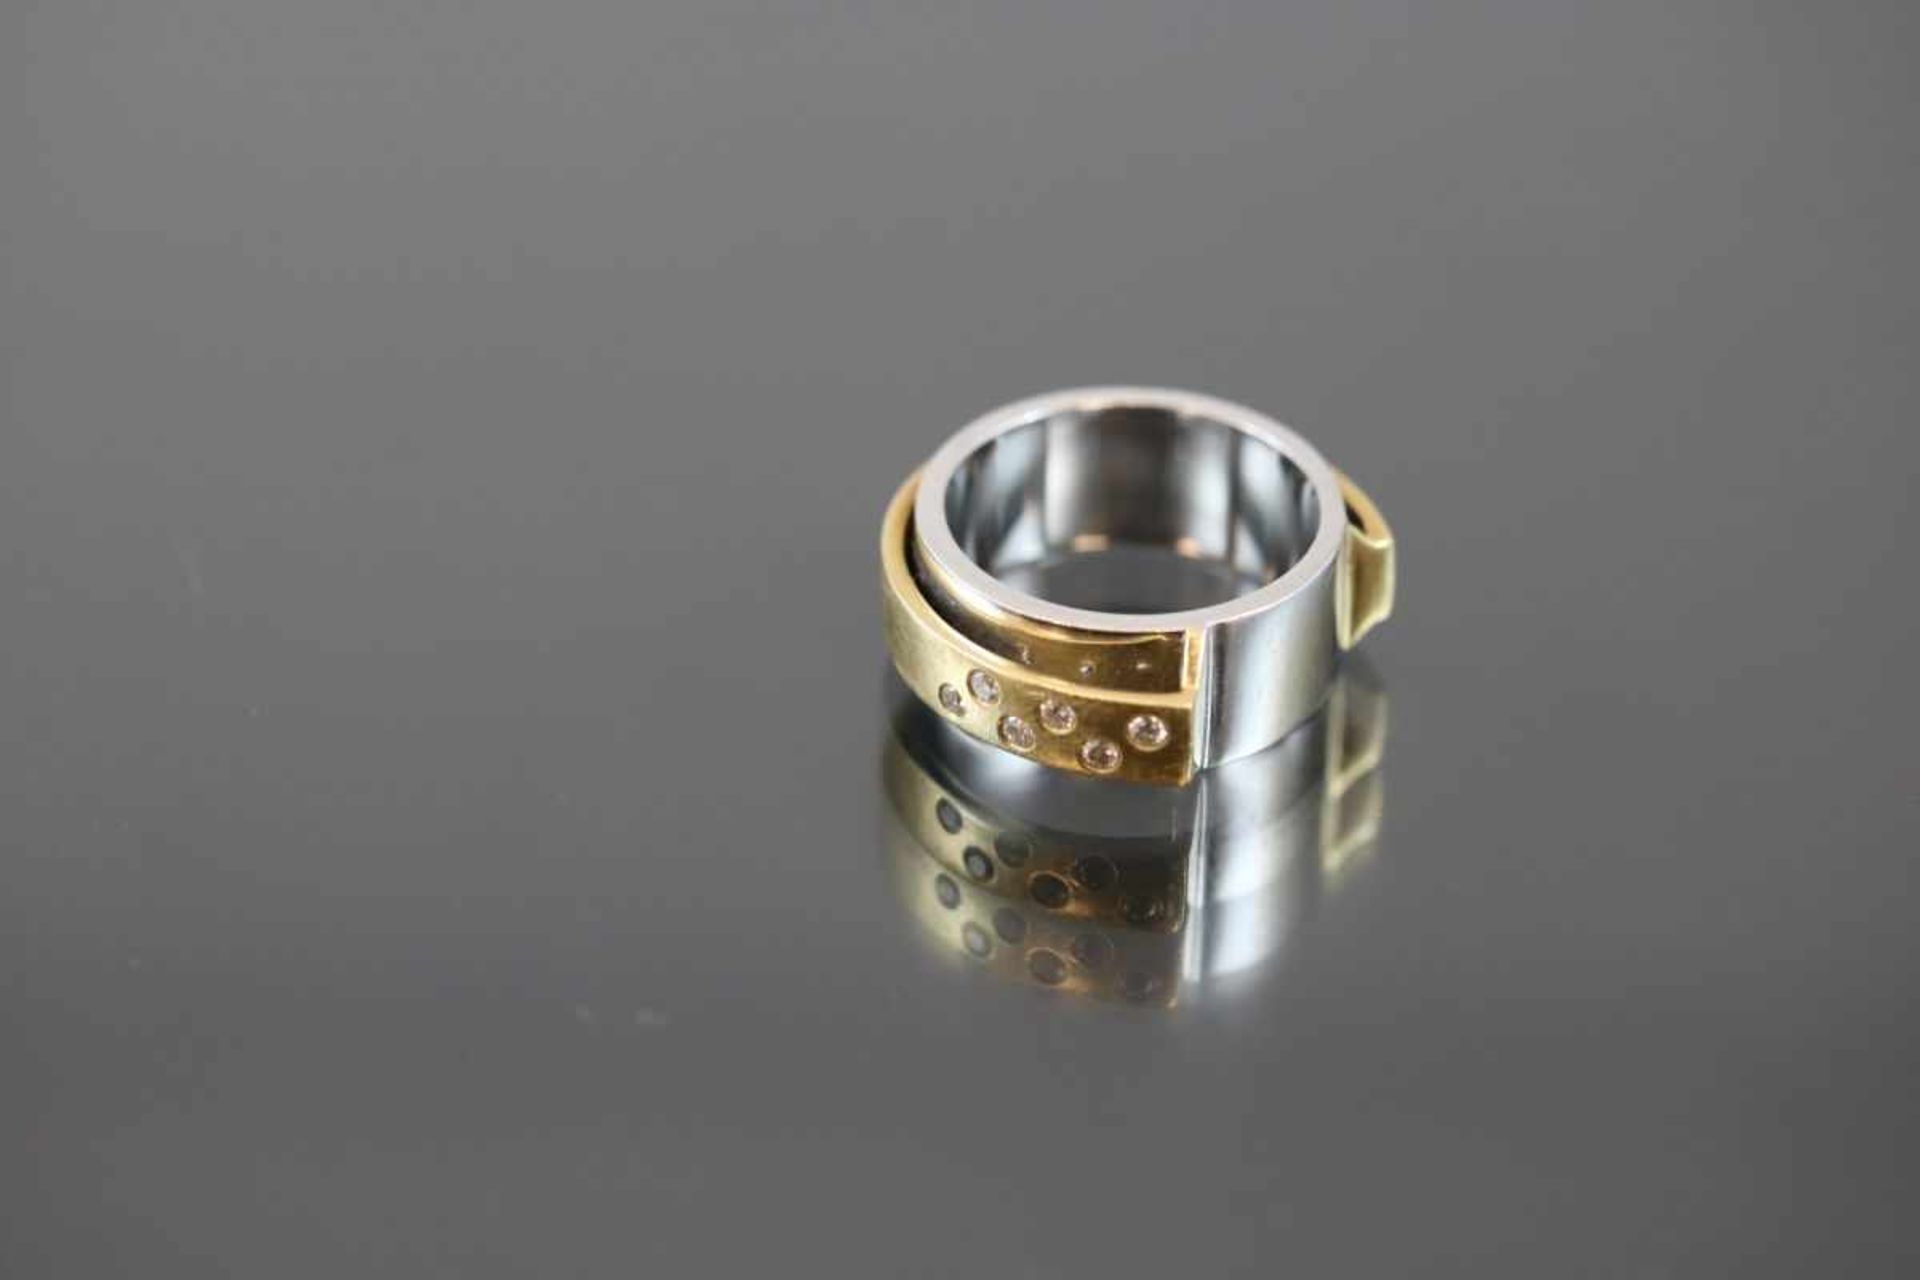 Brillant-Ring, 750 Gold15,9 Gramm 6 Brillanten, 0,18 ct., tw/vsi. Ringgröße: 56Schätzpreis: 2400,- -